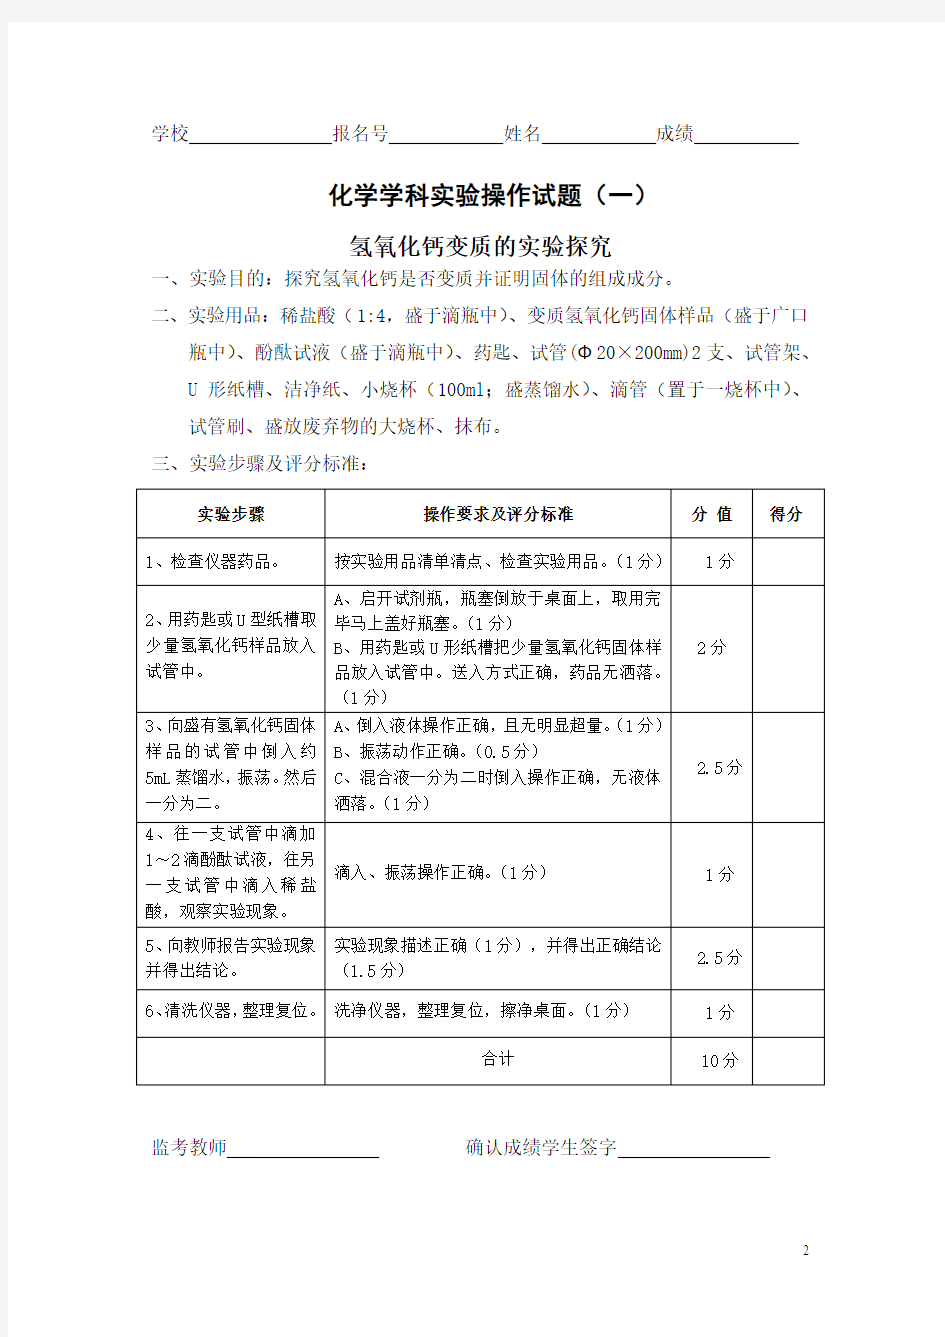 2013年河南省初中化学实验操作考试试题库目录(共22套题)